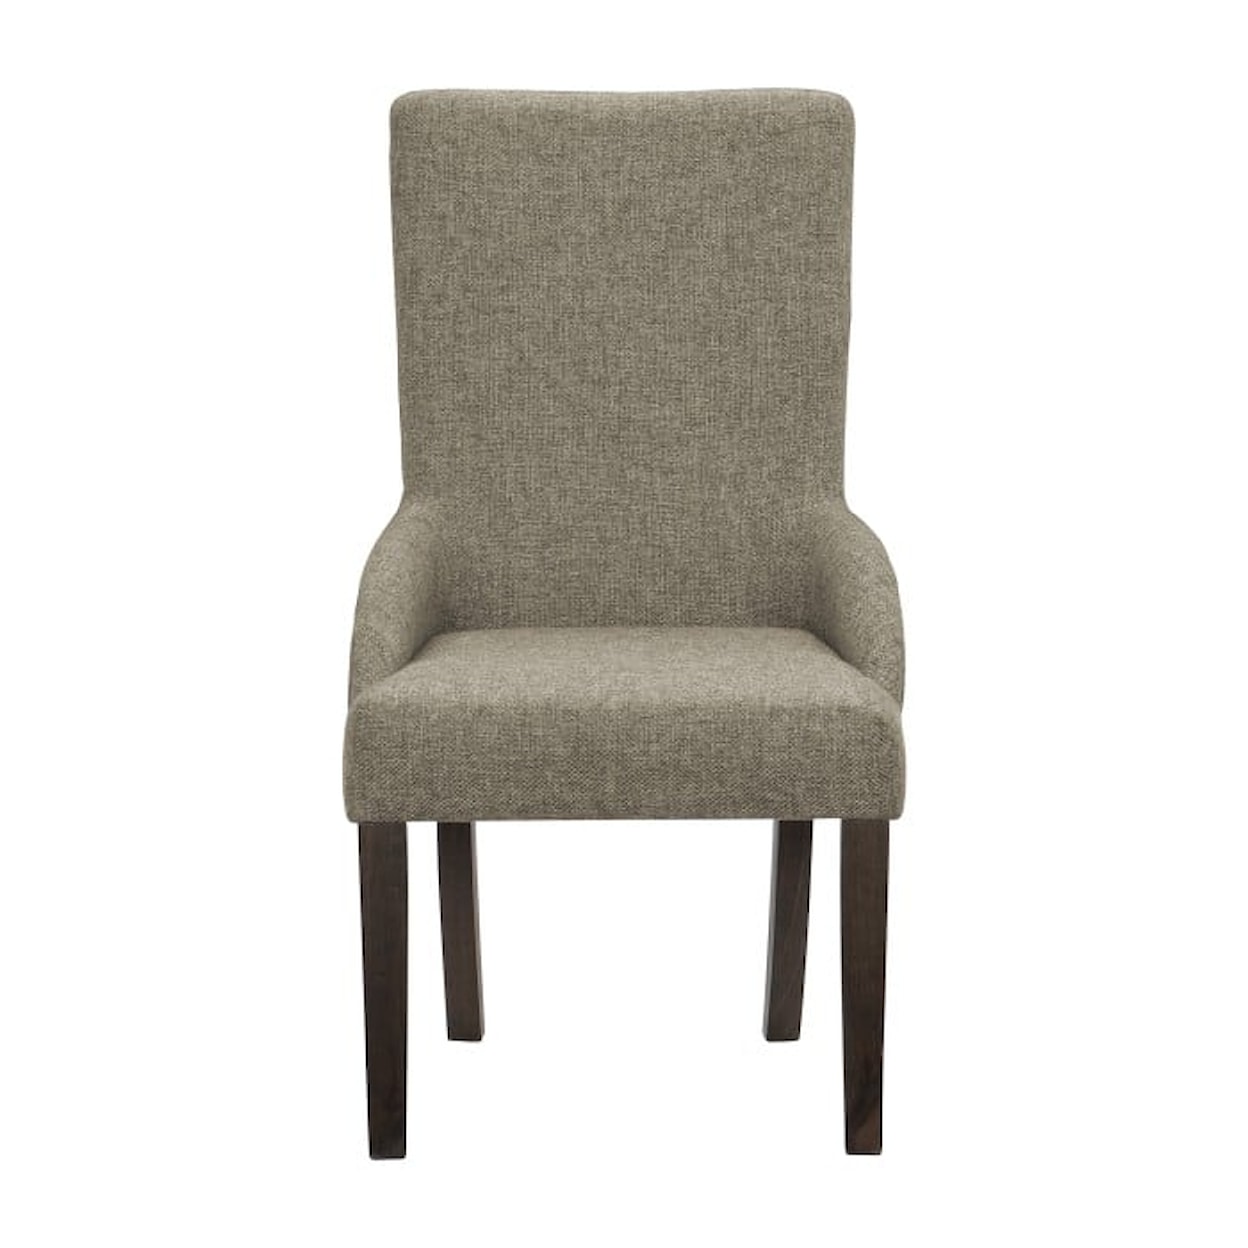 Homelegance Furniture Gloversville Arm Chair